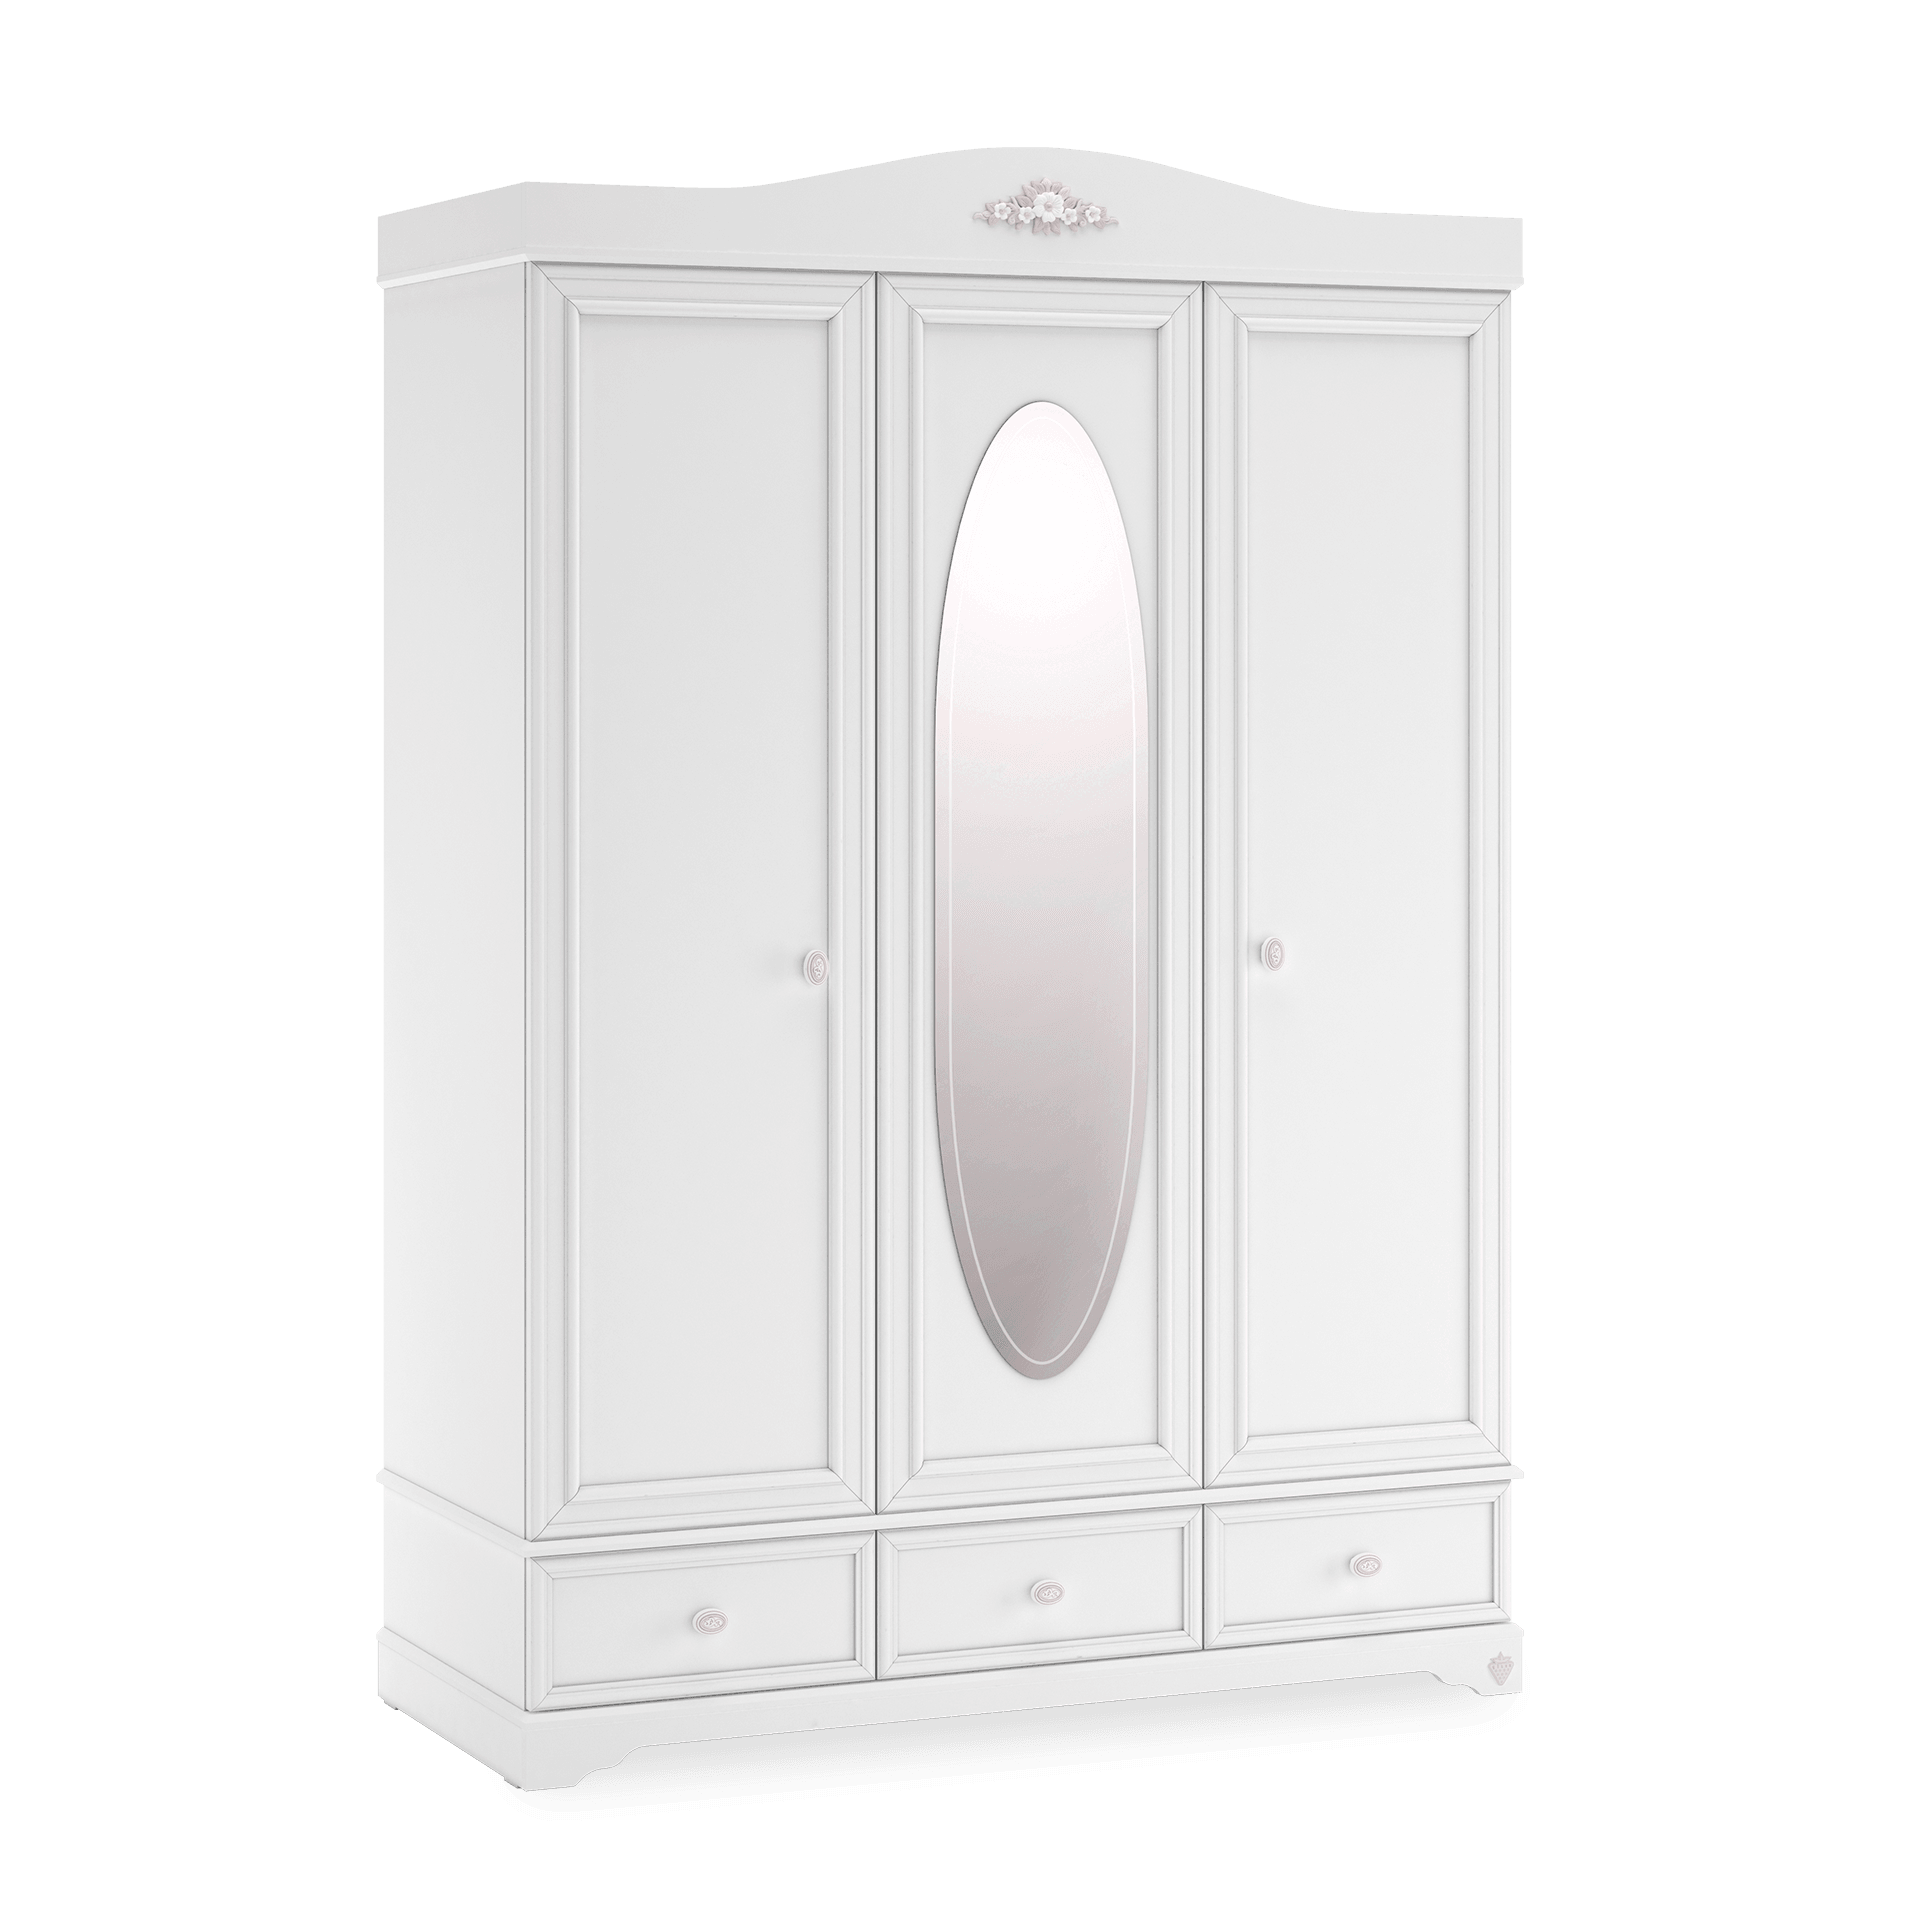 Cilek Rustic White 3 Doors Wardrobe - Kids Haven